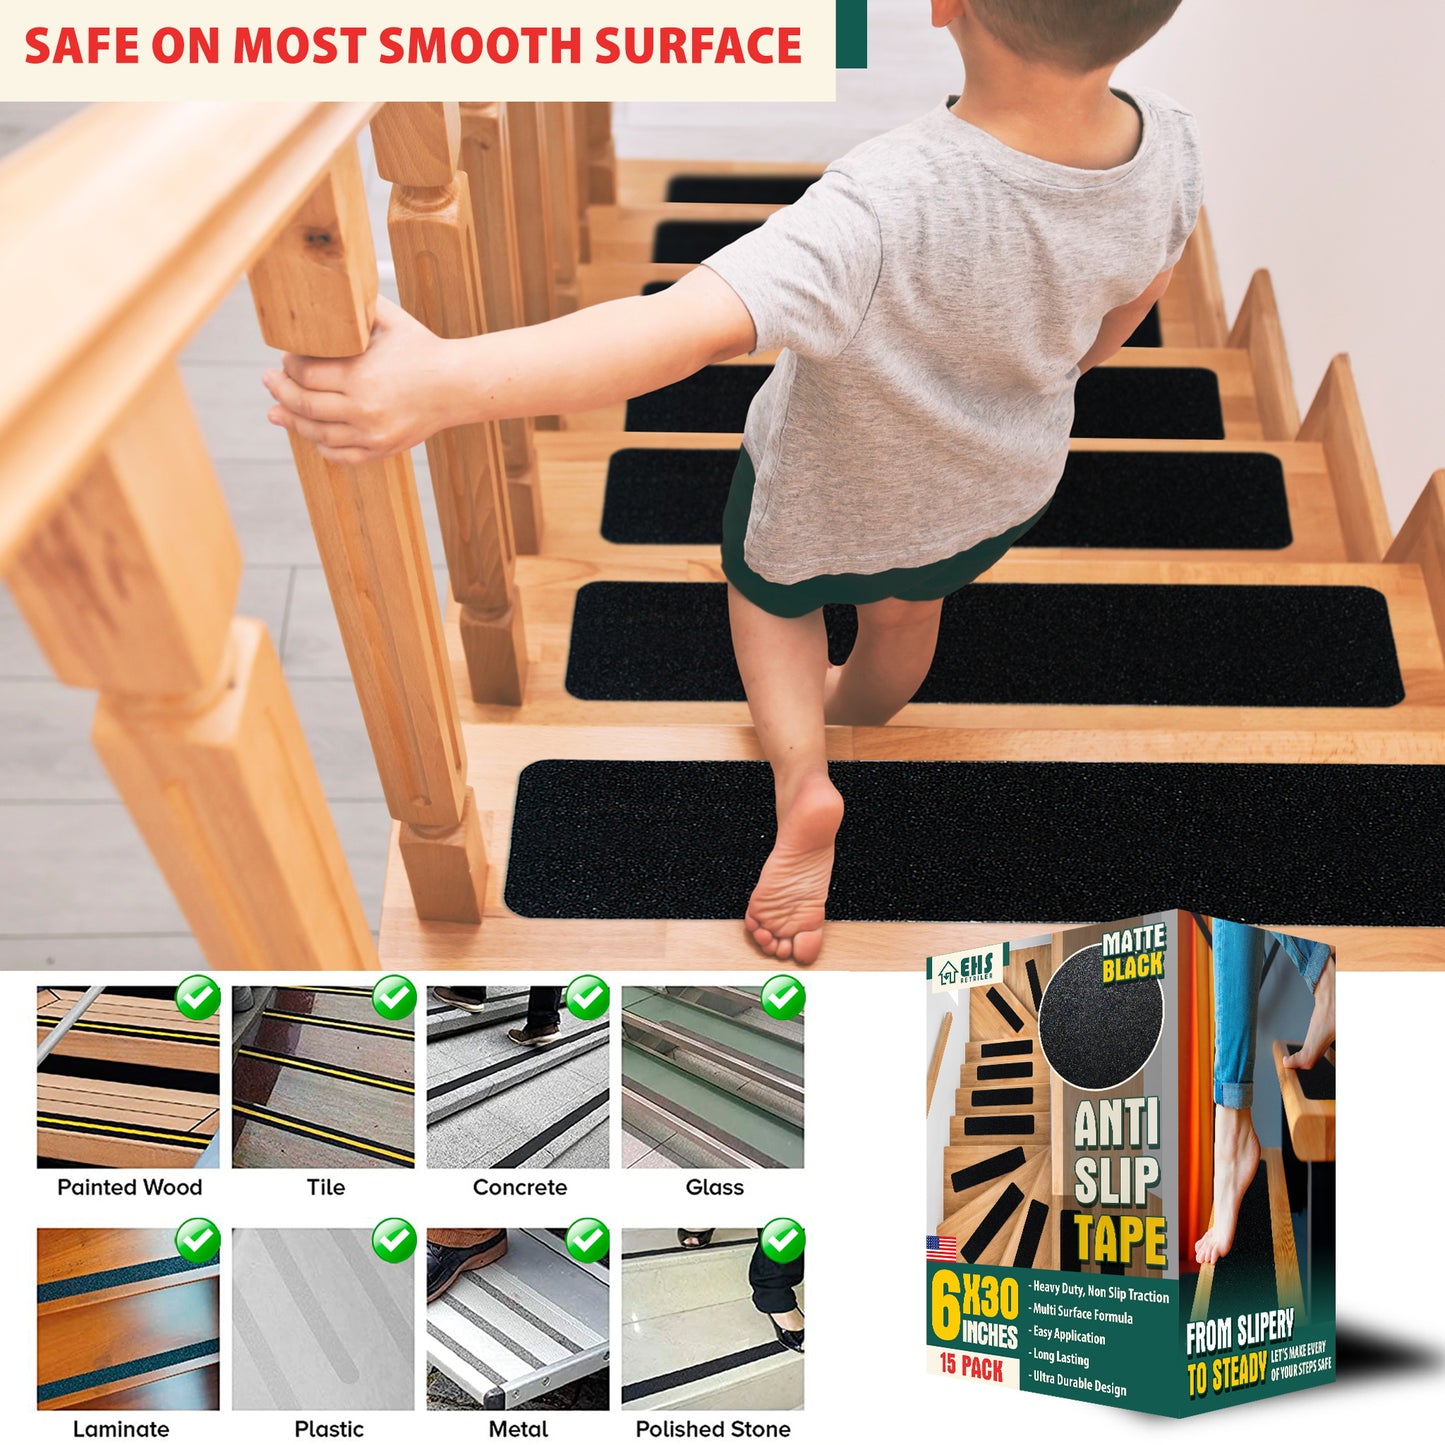 EHS 6x30” Anti Slip Tape Outdoor Stair Treads Non-Slip (15-Packs Black )